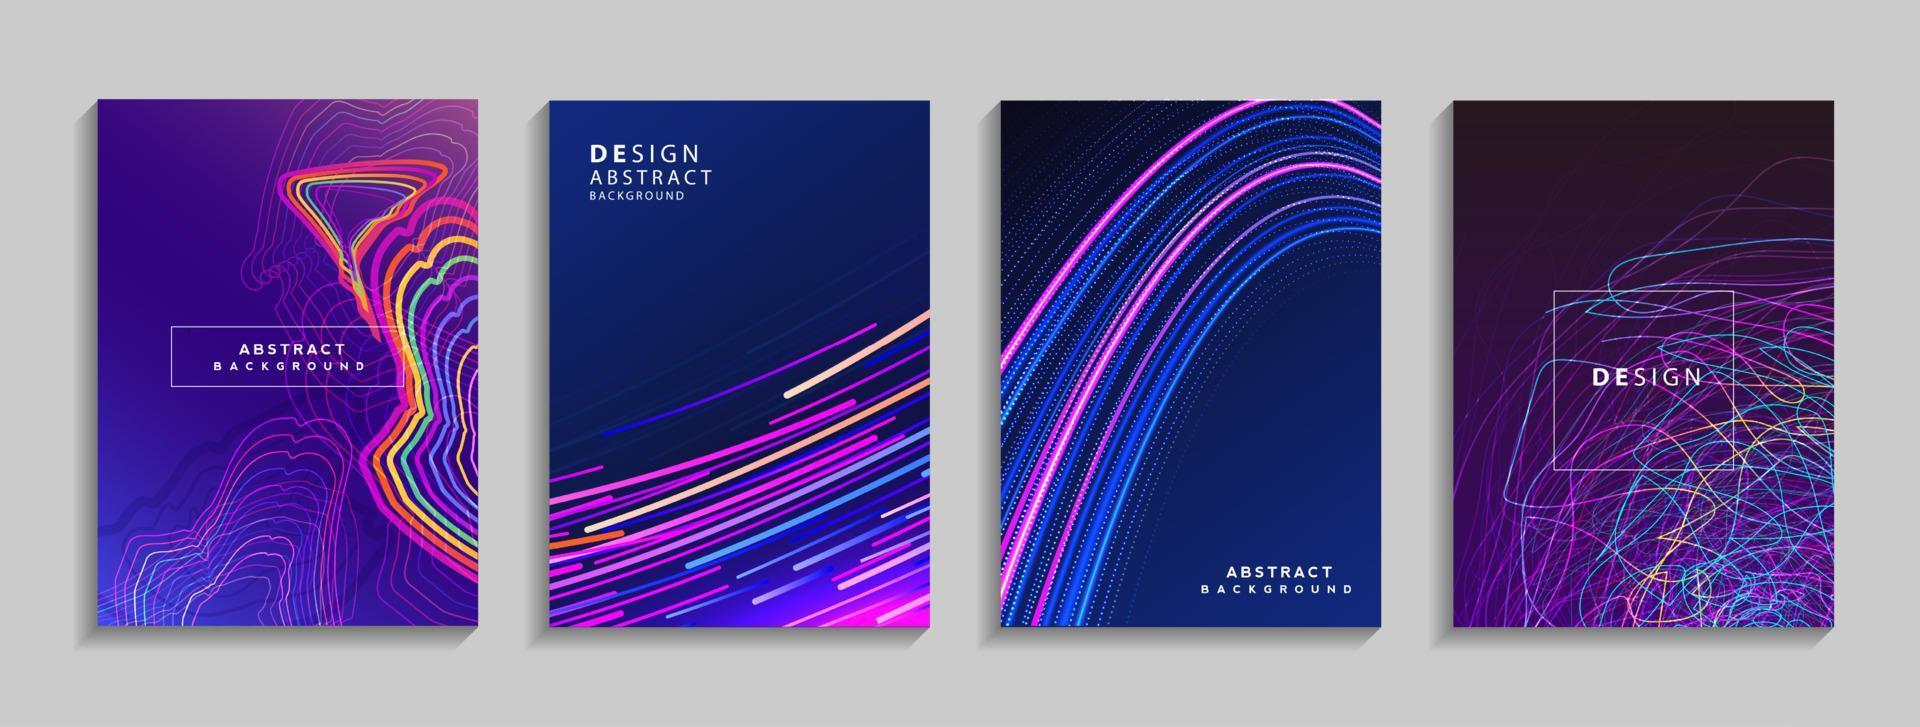 moderne kleurrijke geometrische abstracte achtergrond. vloeiende vormensamenstelling voor spandoek, poster, boek of web. vector illustratie ontwerp eps10.